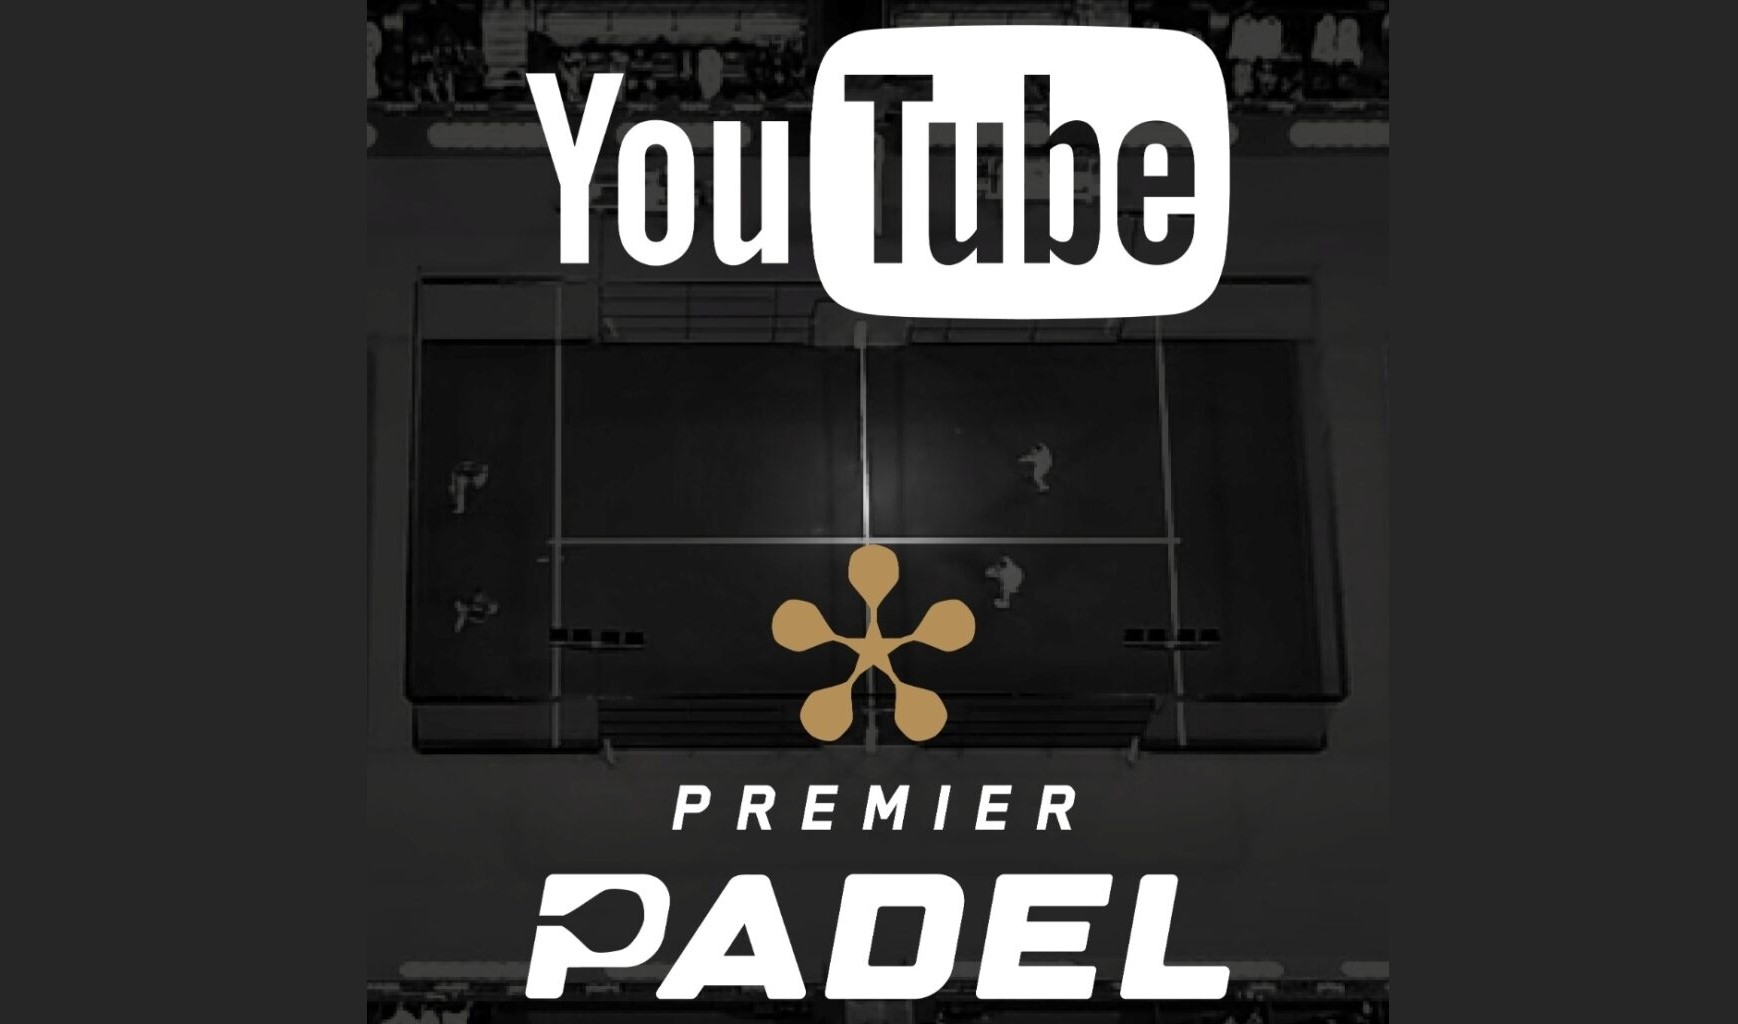 Premier Padel emitowany na Youtube w Hiszpanii